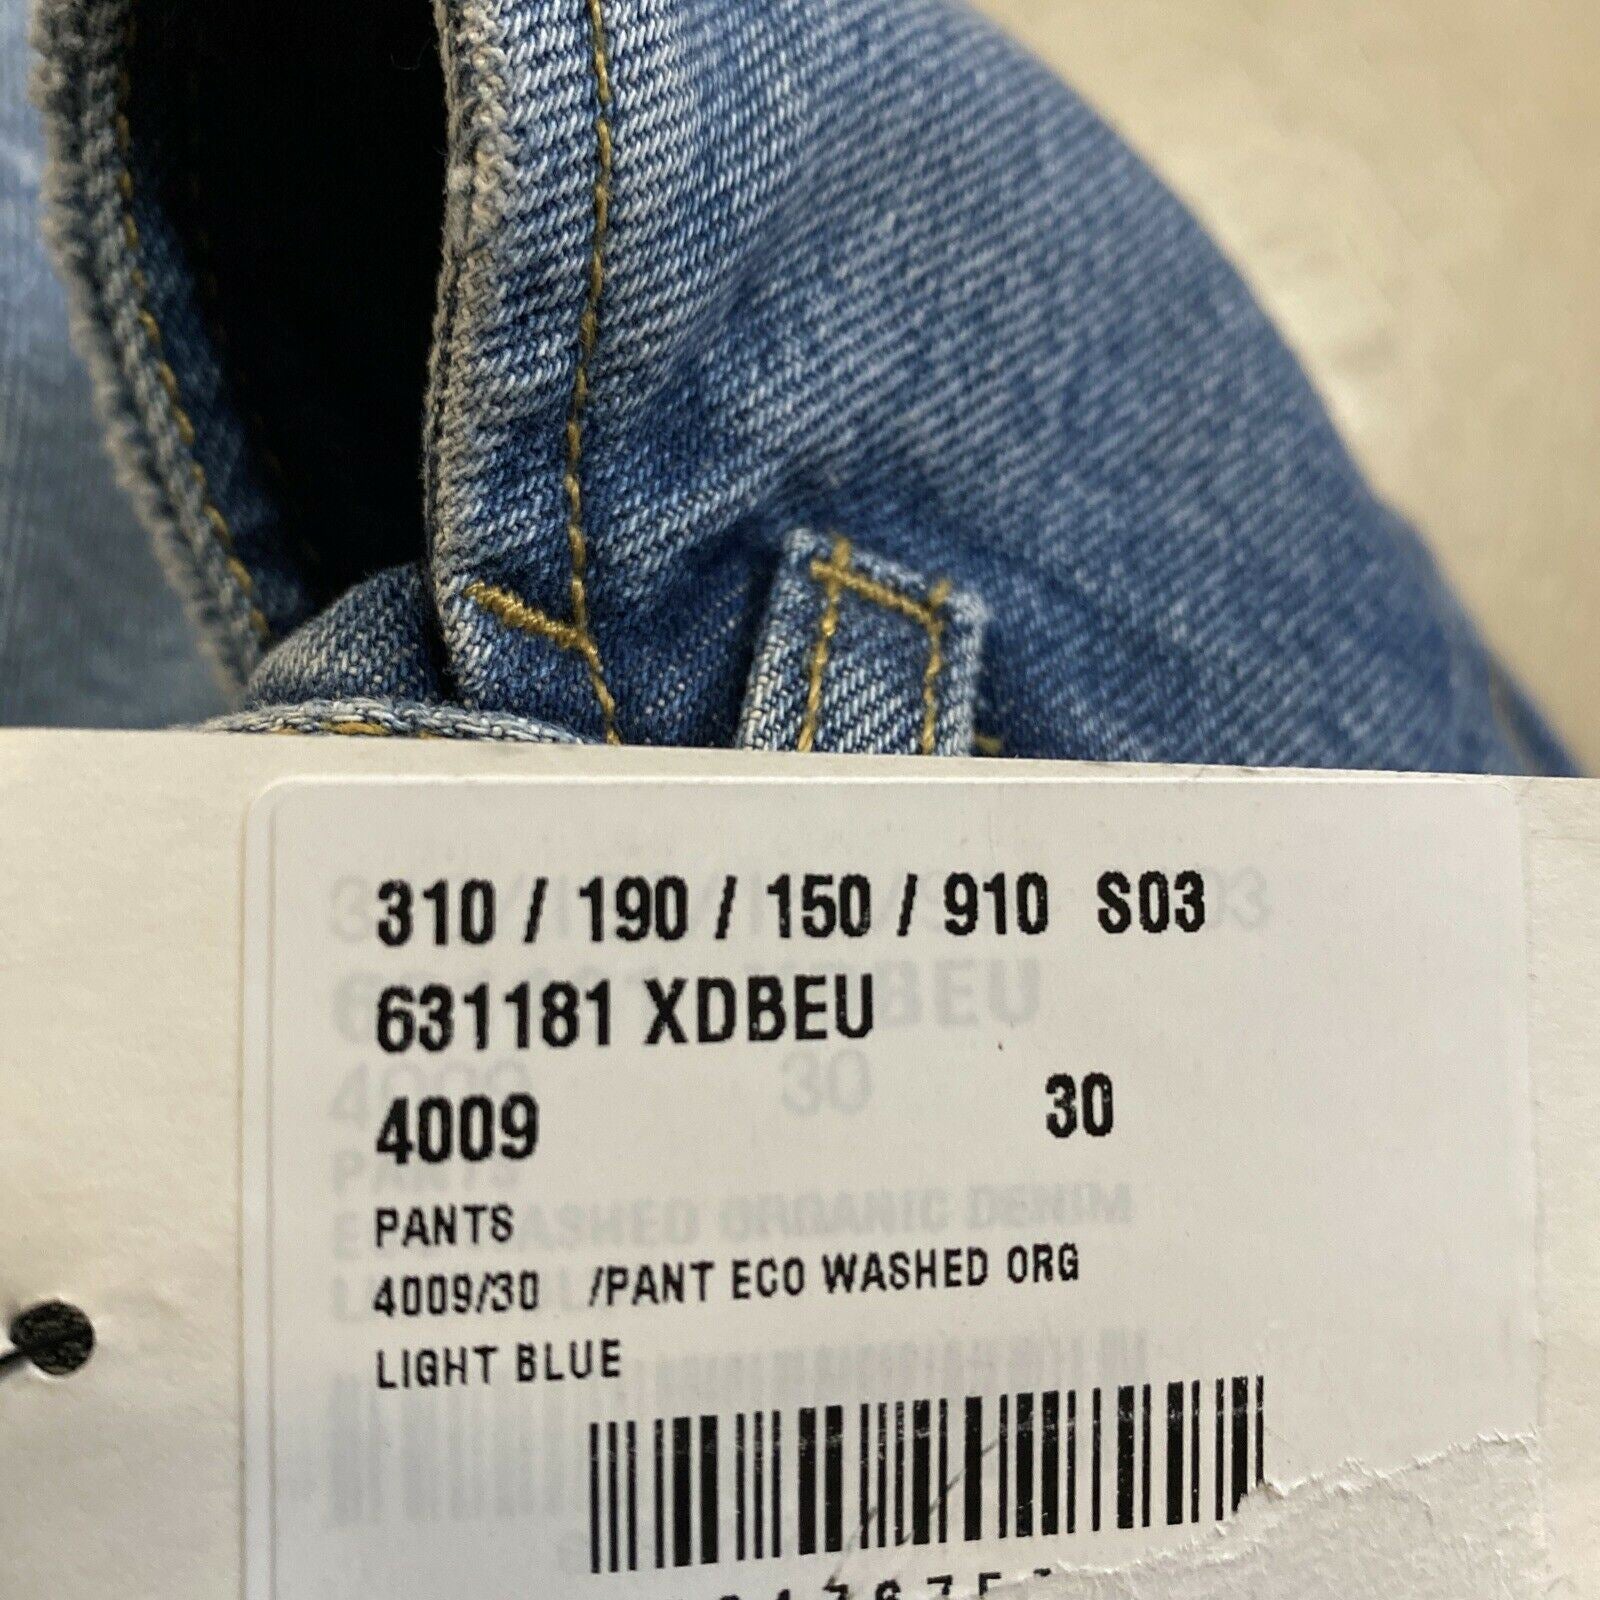 СЗТ $1500 Мужские короткие джинсовые брюки Gucci синие, размер 30 США/44 ЕС